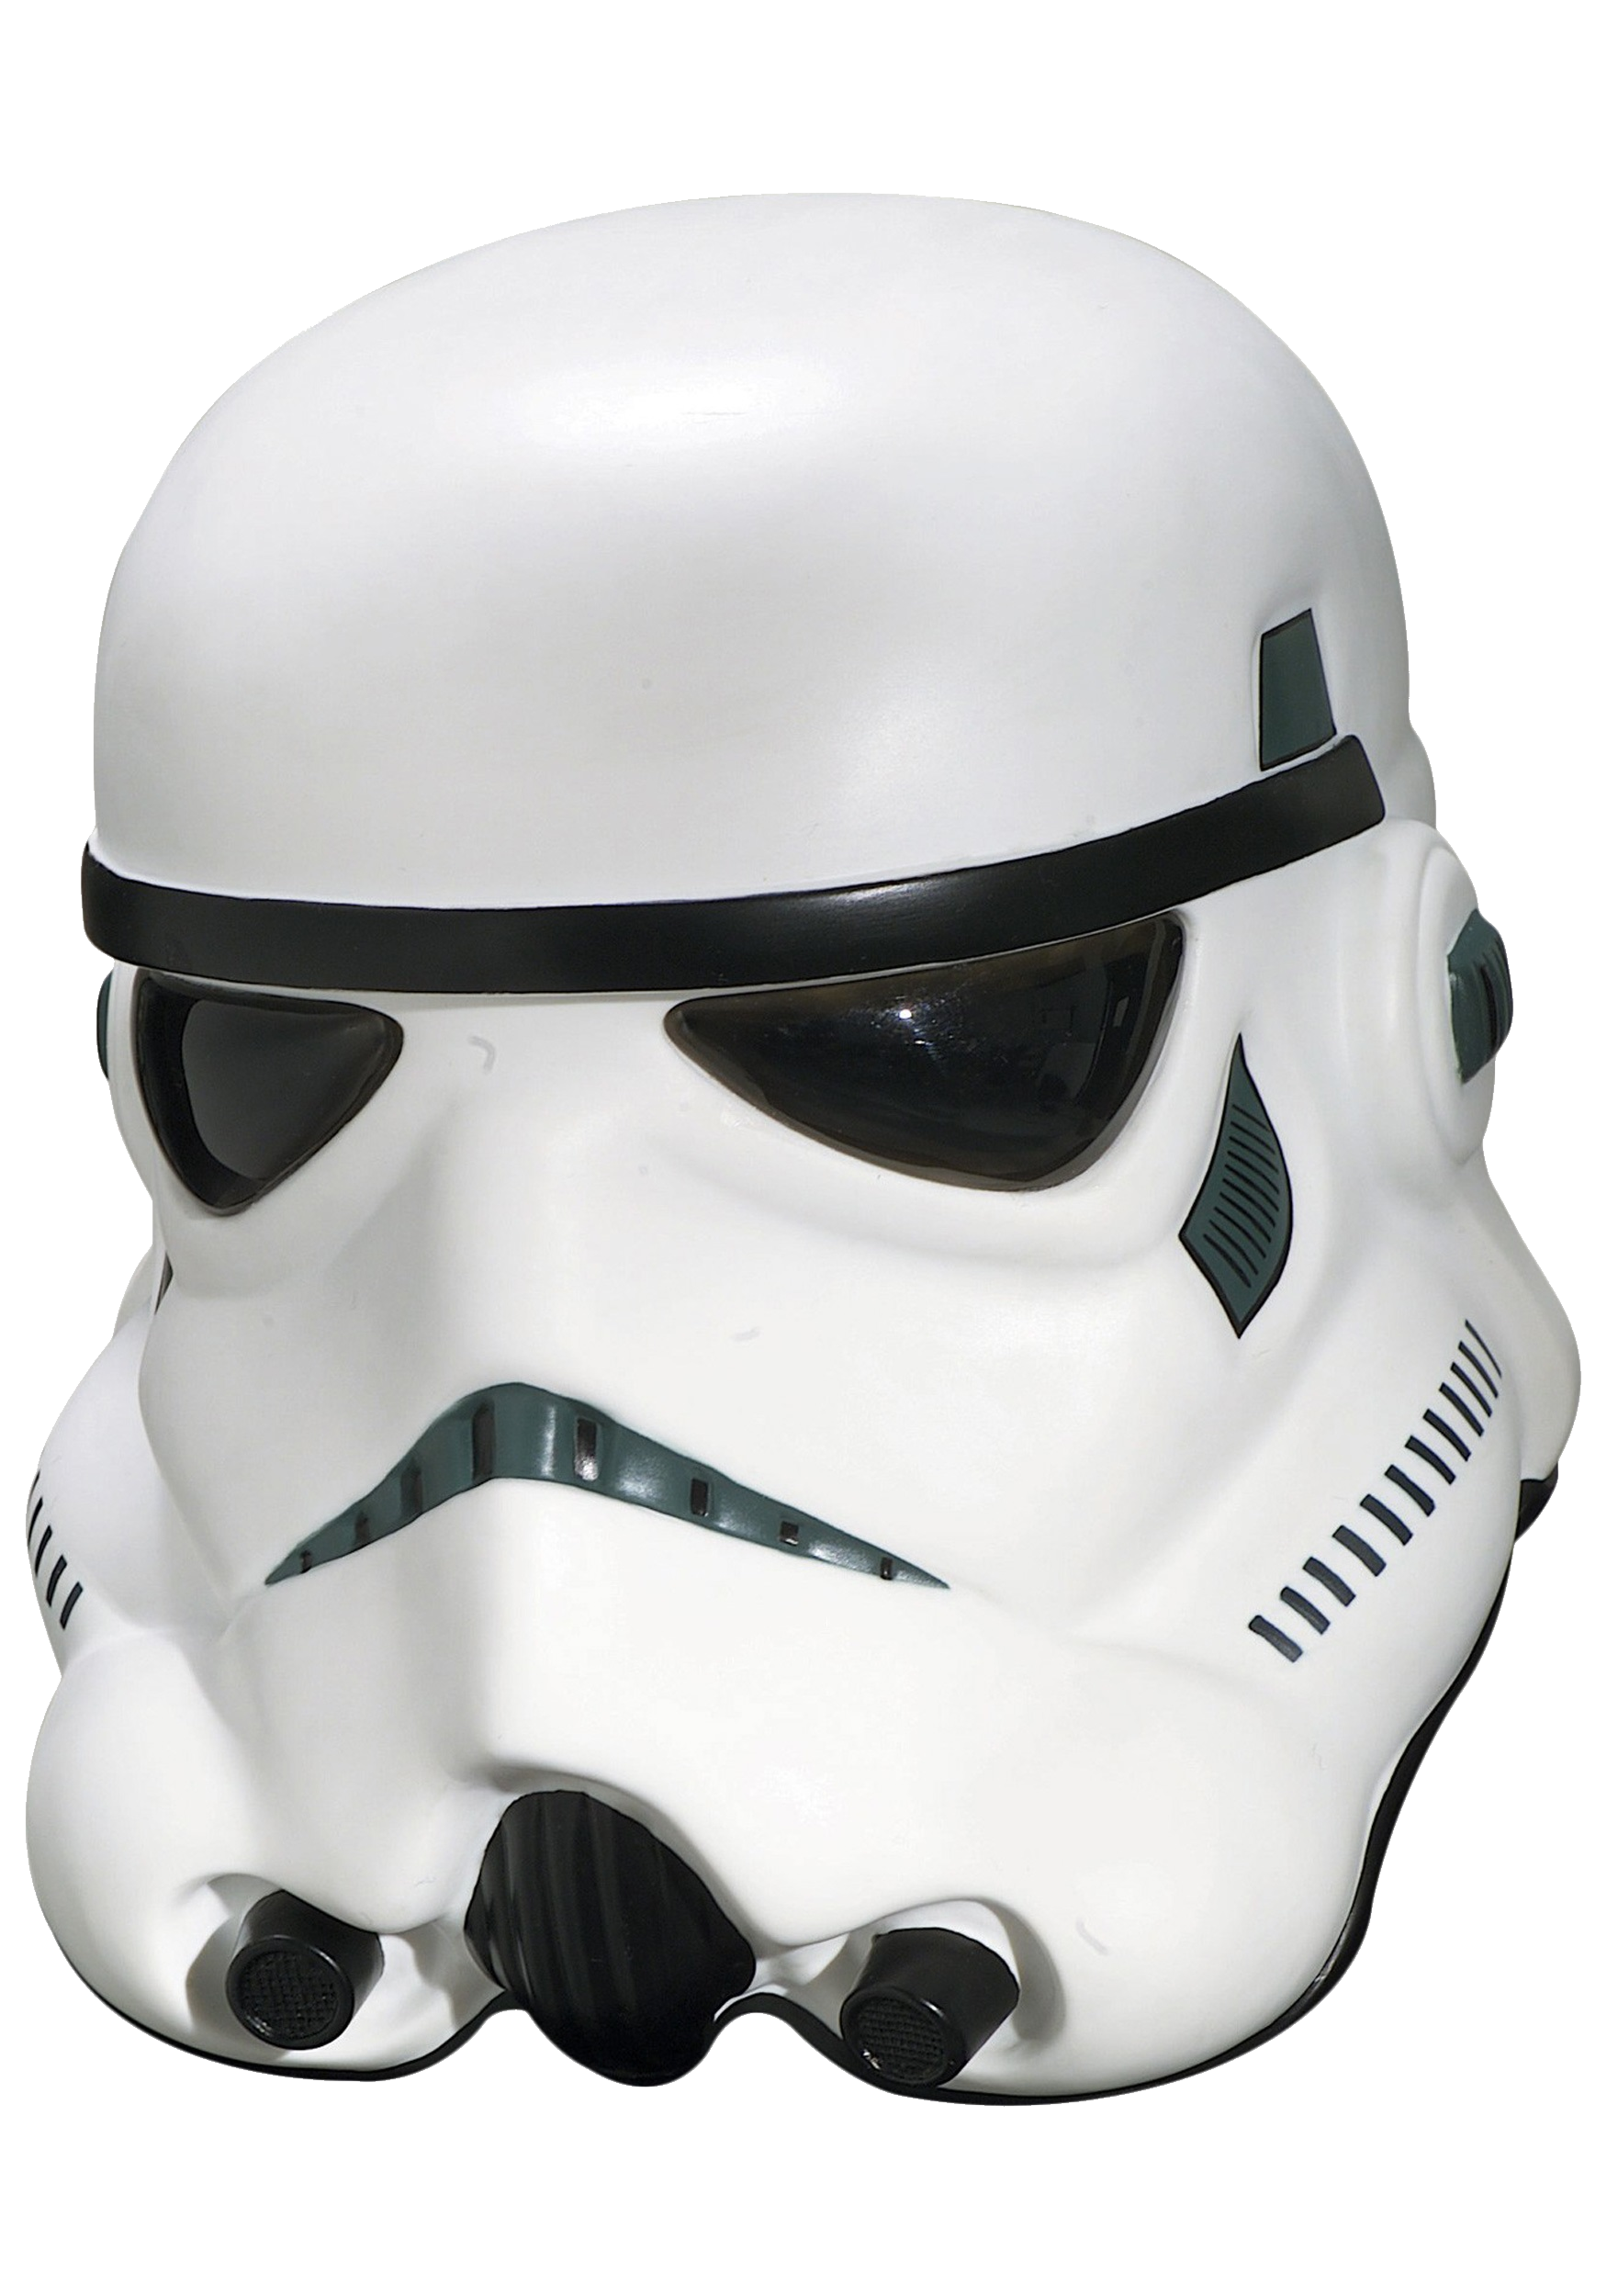 How To Get Stormtrooper Helmet Roblox